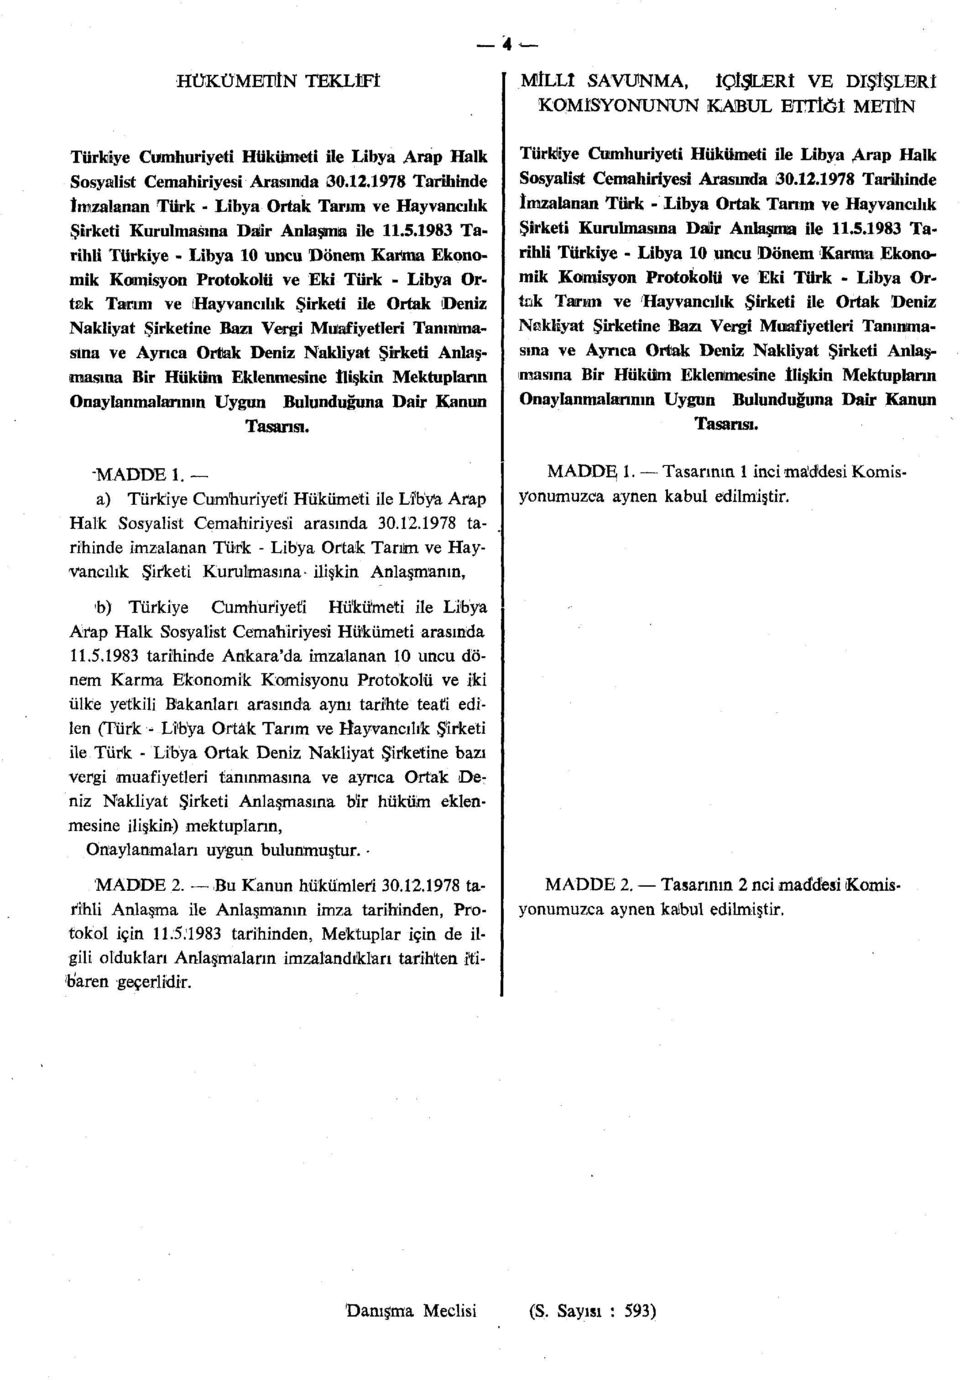 1983 Tarihli Türkiye - Libya 10 uncu Dönem Karma Ekonomik Komisyon Protokolü ve Eki Türk - Libya Ortak Tarım ve Hayvancılık Şirketi ile Ortak Deniz Nakliyat Şirketine Bazı Vergi Muafiyetleri